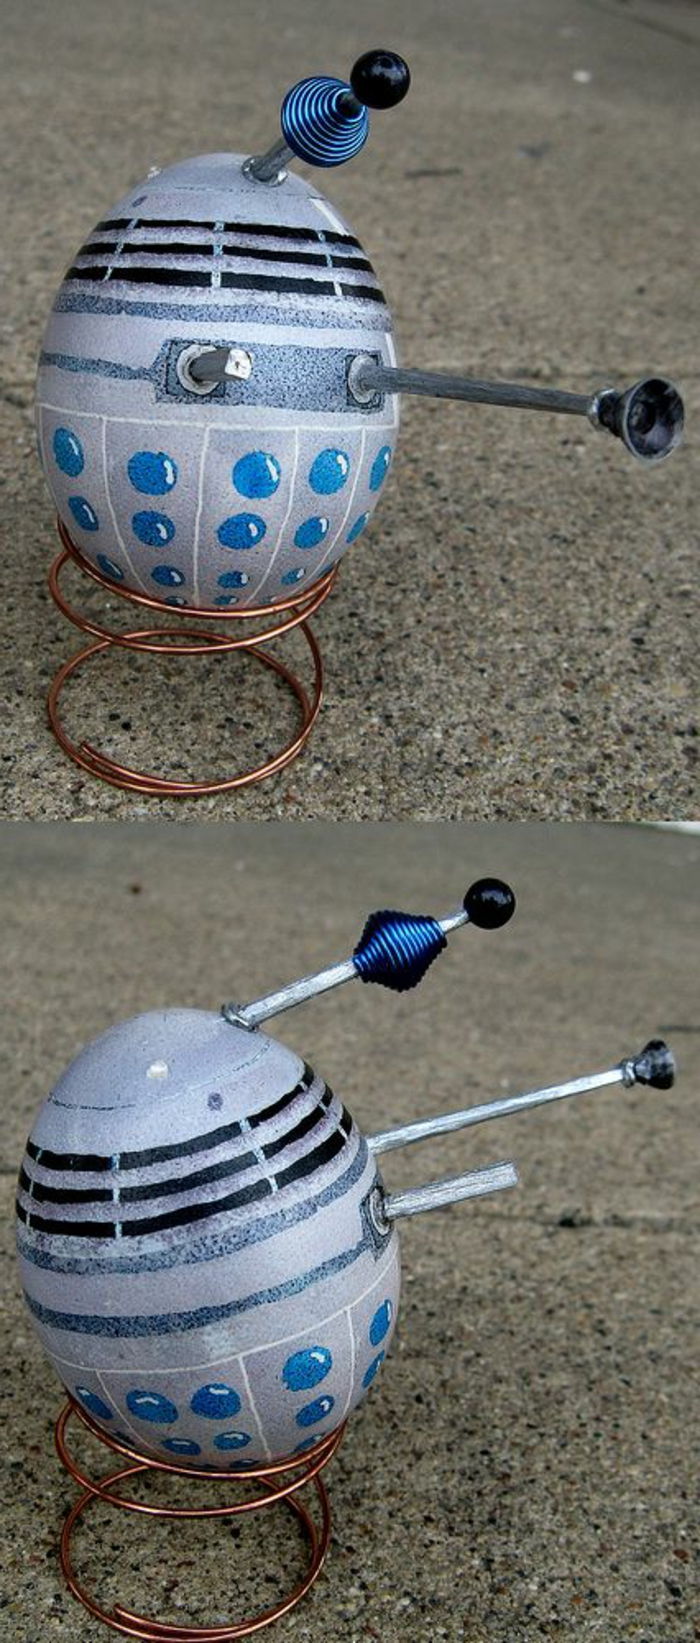 šedá zmrzlina zo série Star Wars s niekoľkými lepenými časťami - veľkonočné vajíčka vtipné